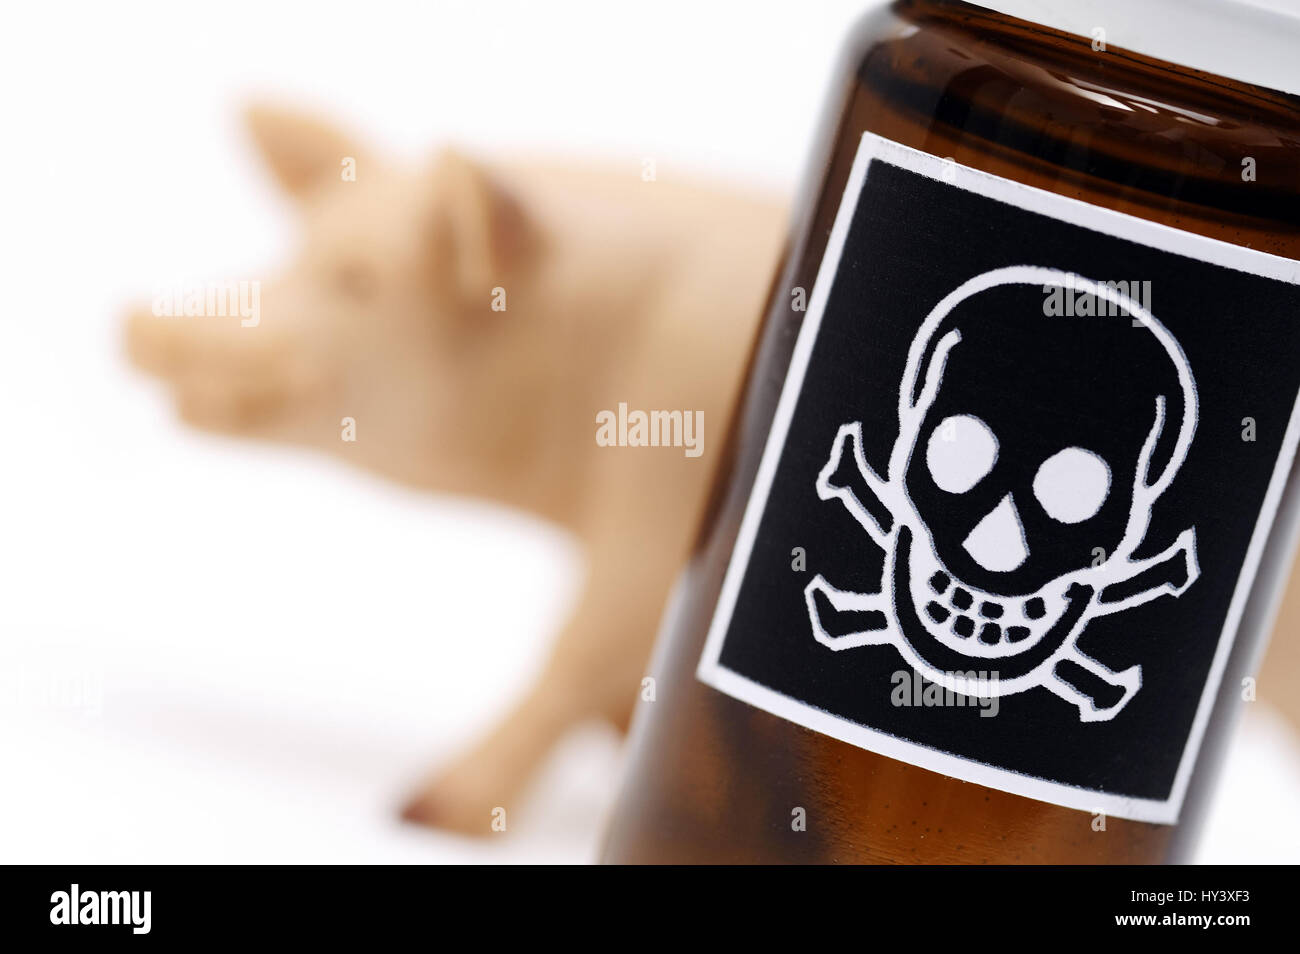 Miniature pig and bottle with poison label, symbolic photo for loaded pork, Miniaturschwein und Flasche mit Gift-Etikett, Symbolfoto fuer belastetes S Stock Photo